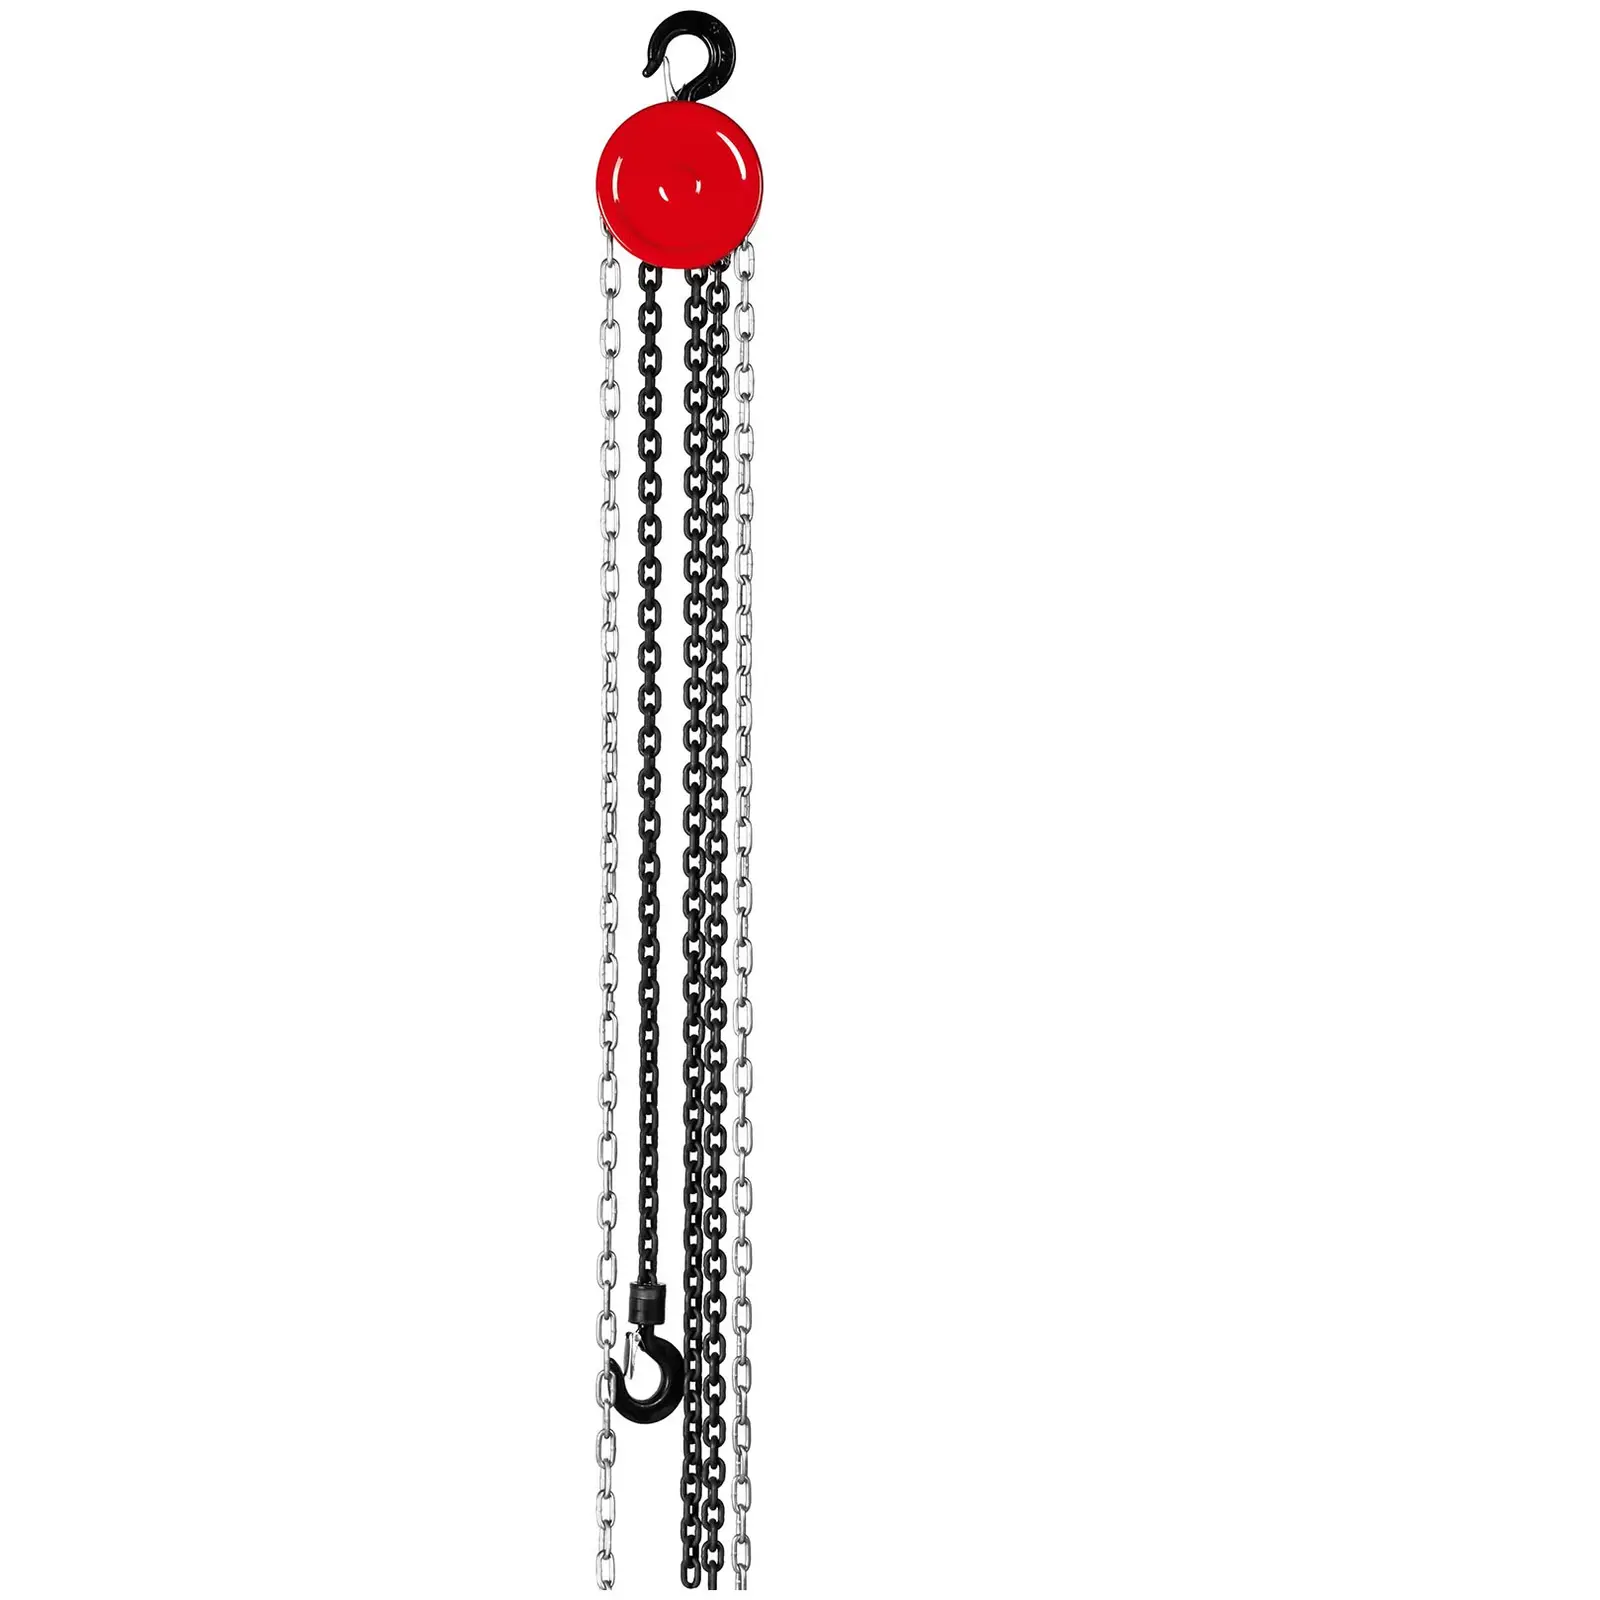 Řetězový kladkostroj - 1000 kg - 6 m